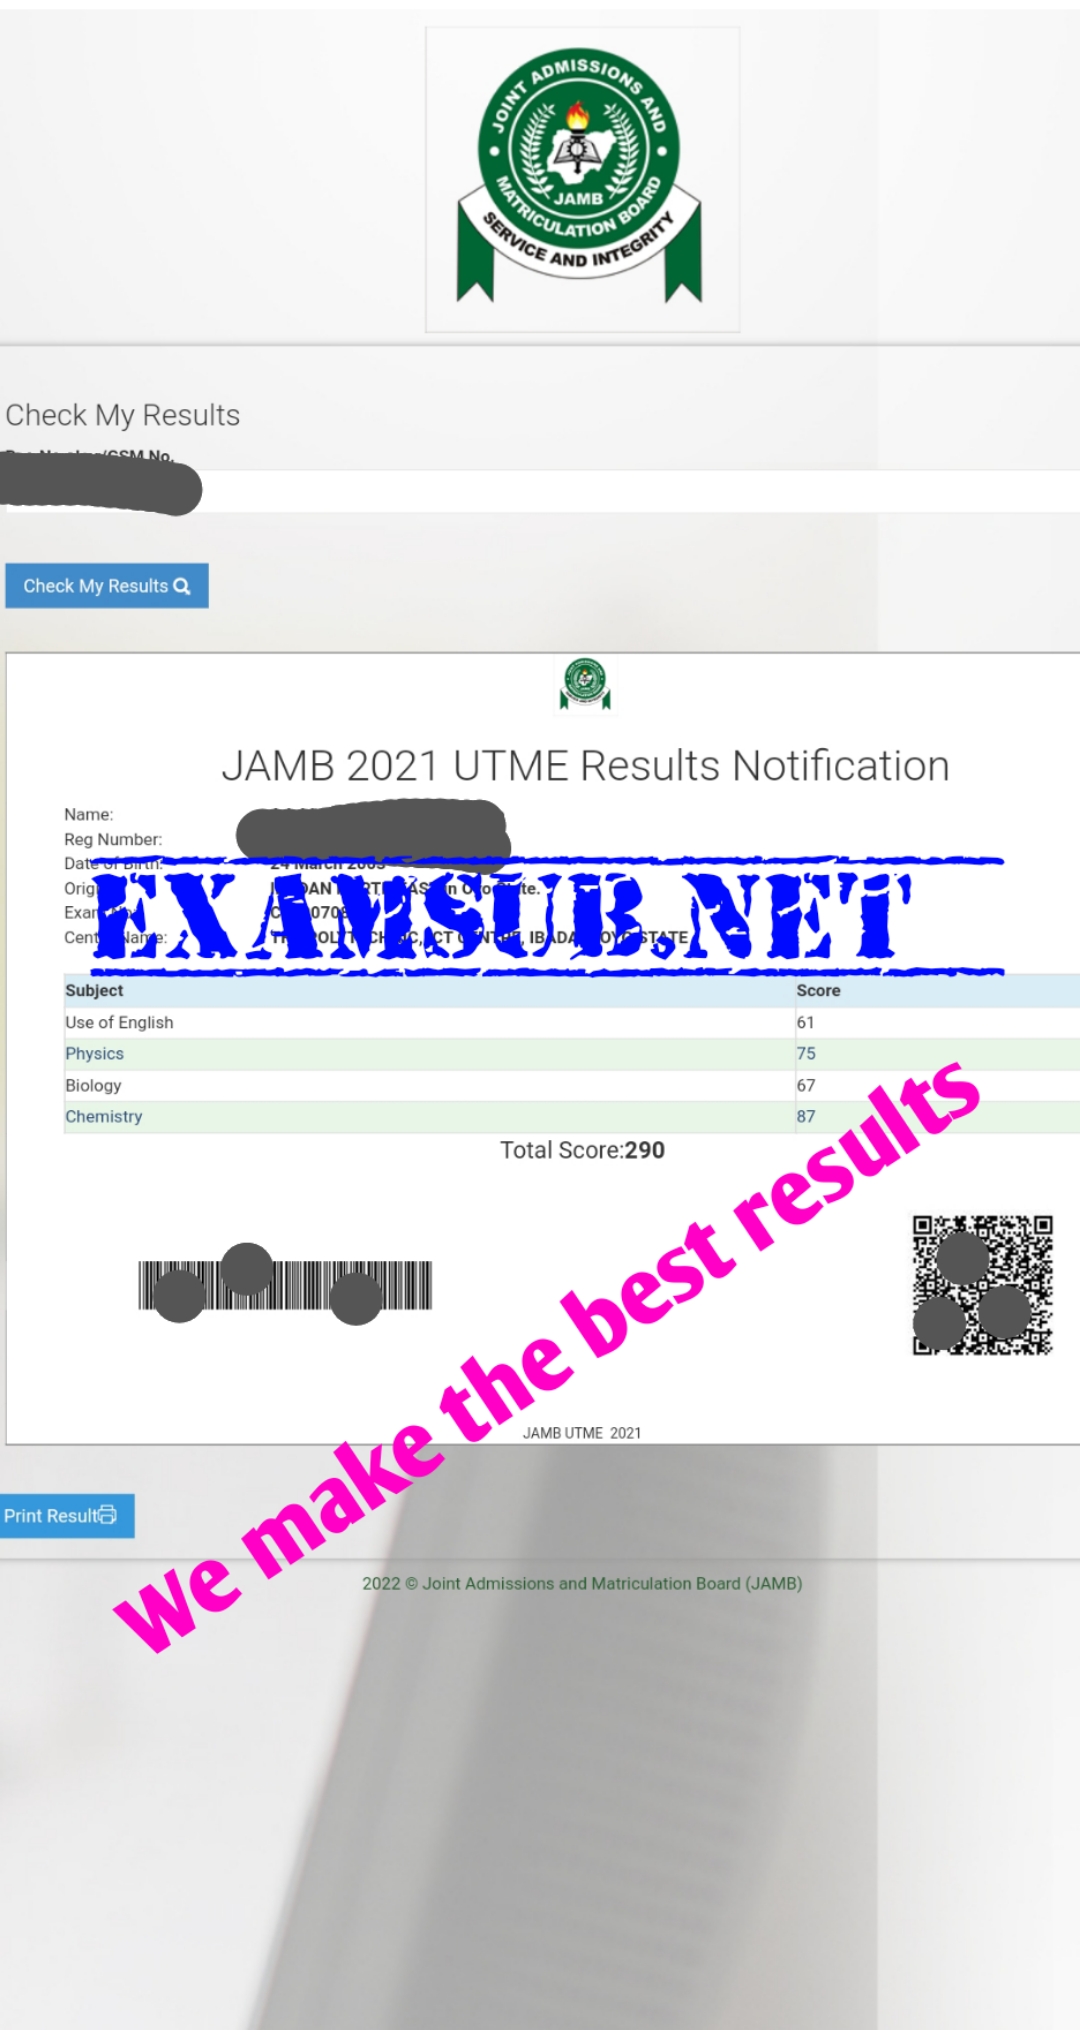 jamb expo, jamb runz, jamb runs, 2024 jamb expo, 2024 jamb runz, 2024 jamb runs, jamb expo 2024, jamb runz 2024, jamb runs 2024, E jamb runz, best jamb runz website, jamb cbt expo, 2024 jamb cbt expo , jamb runz website, is there anything like jamb runs, legit jamb expo, jamb expo whatsapp group link, best jamb expo site, is jamb runz real.